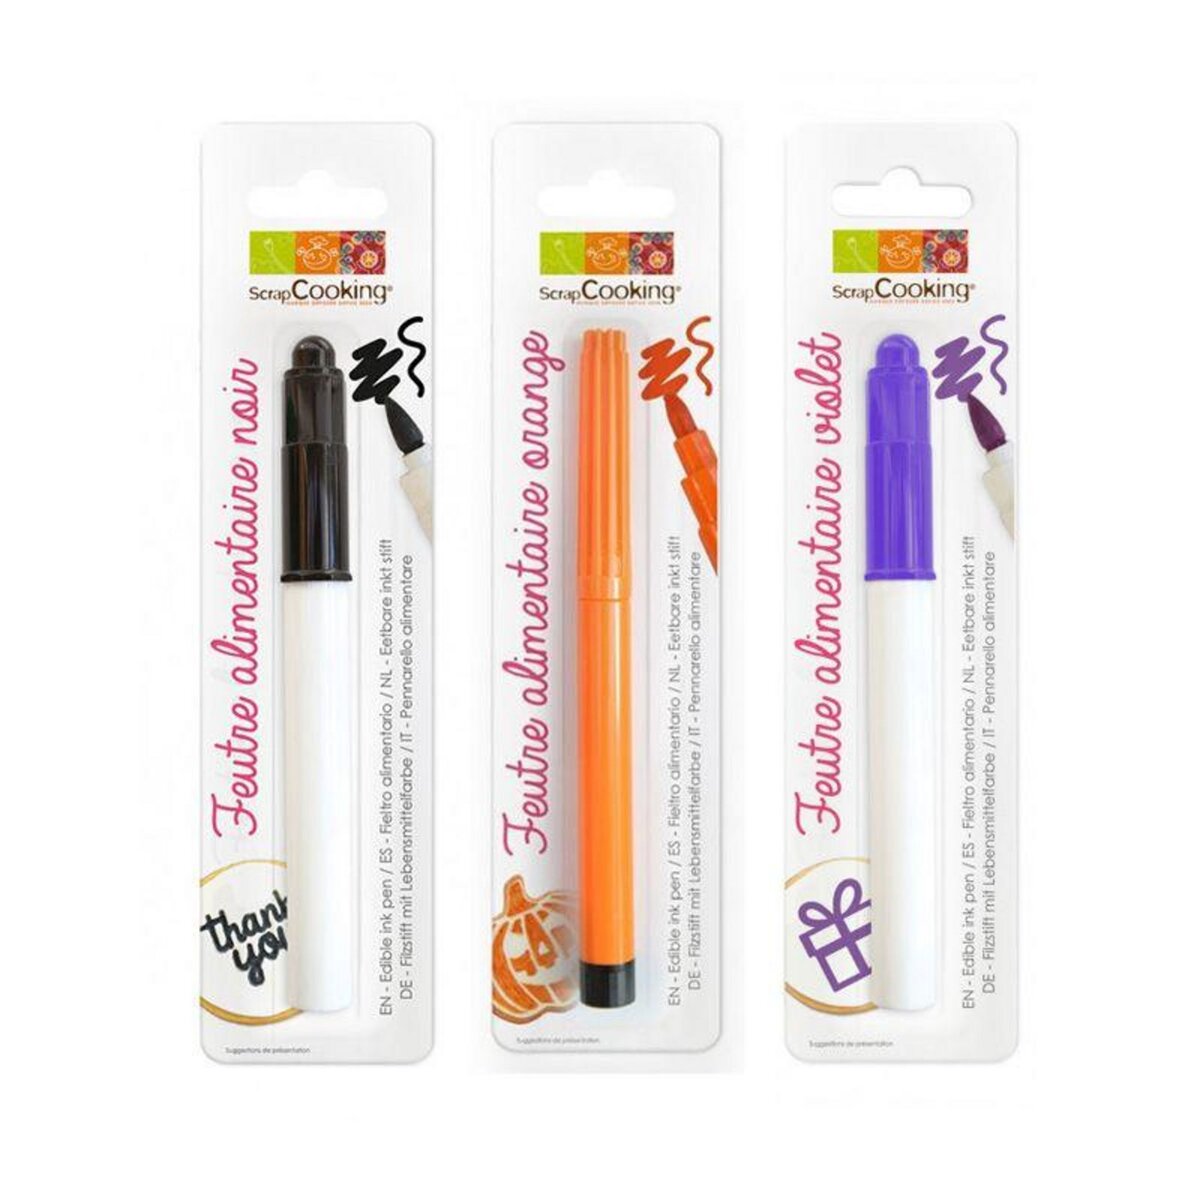 SCRAPCOOKING 3 stylos alimentaires noir, orange et violet - Halloween pas  cher 